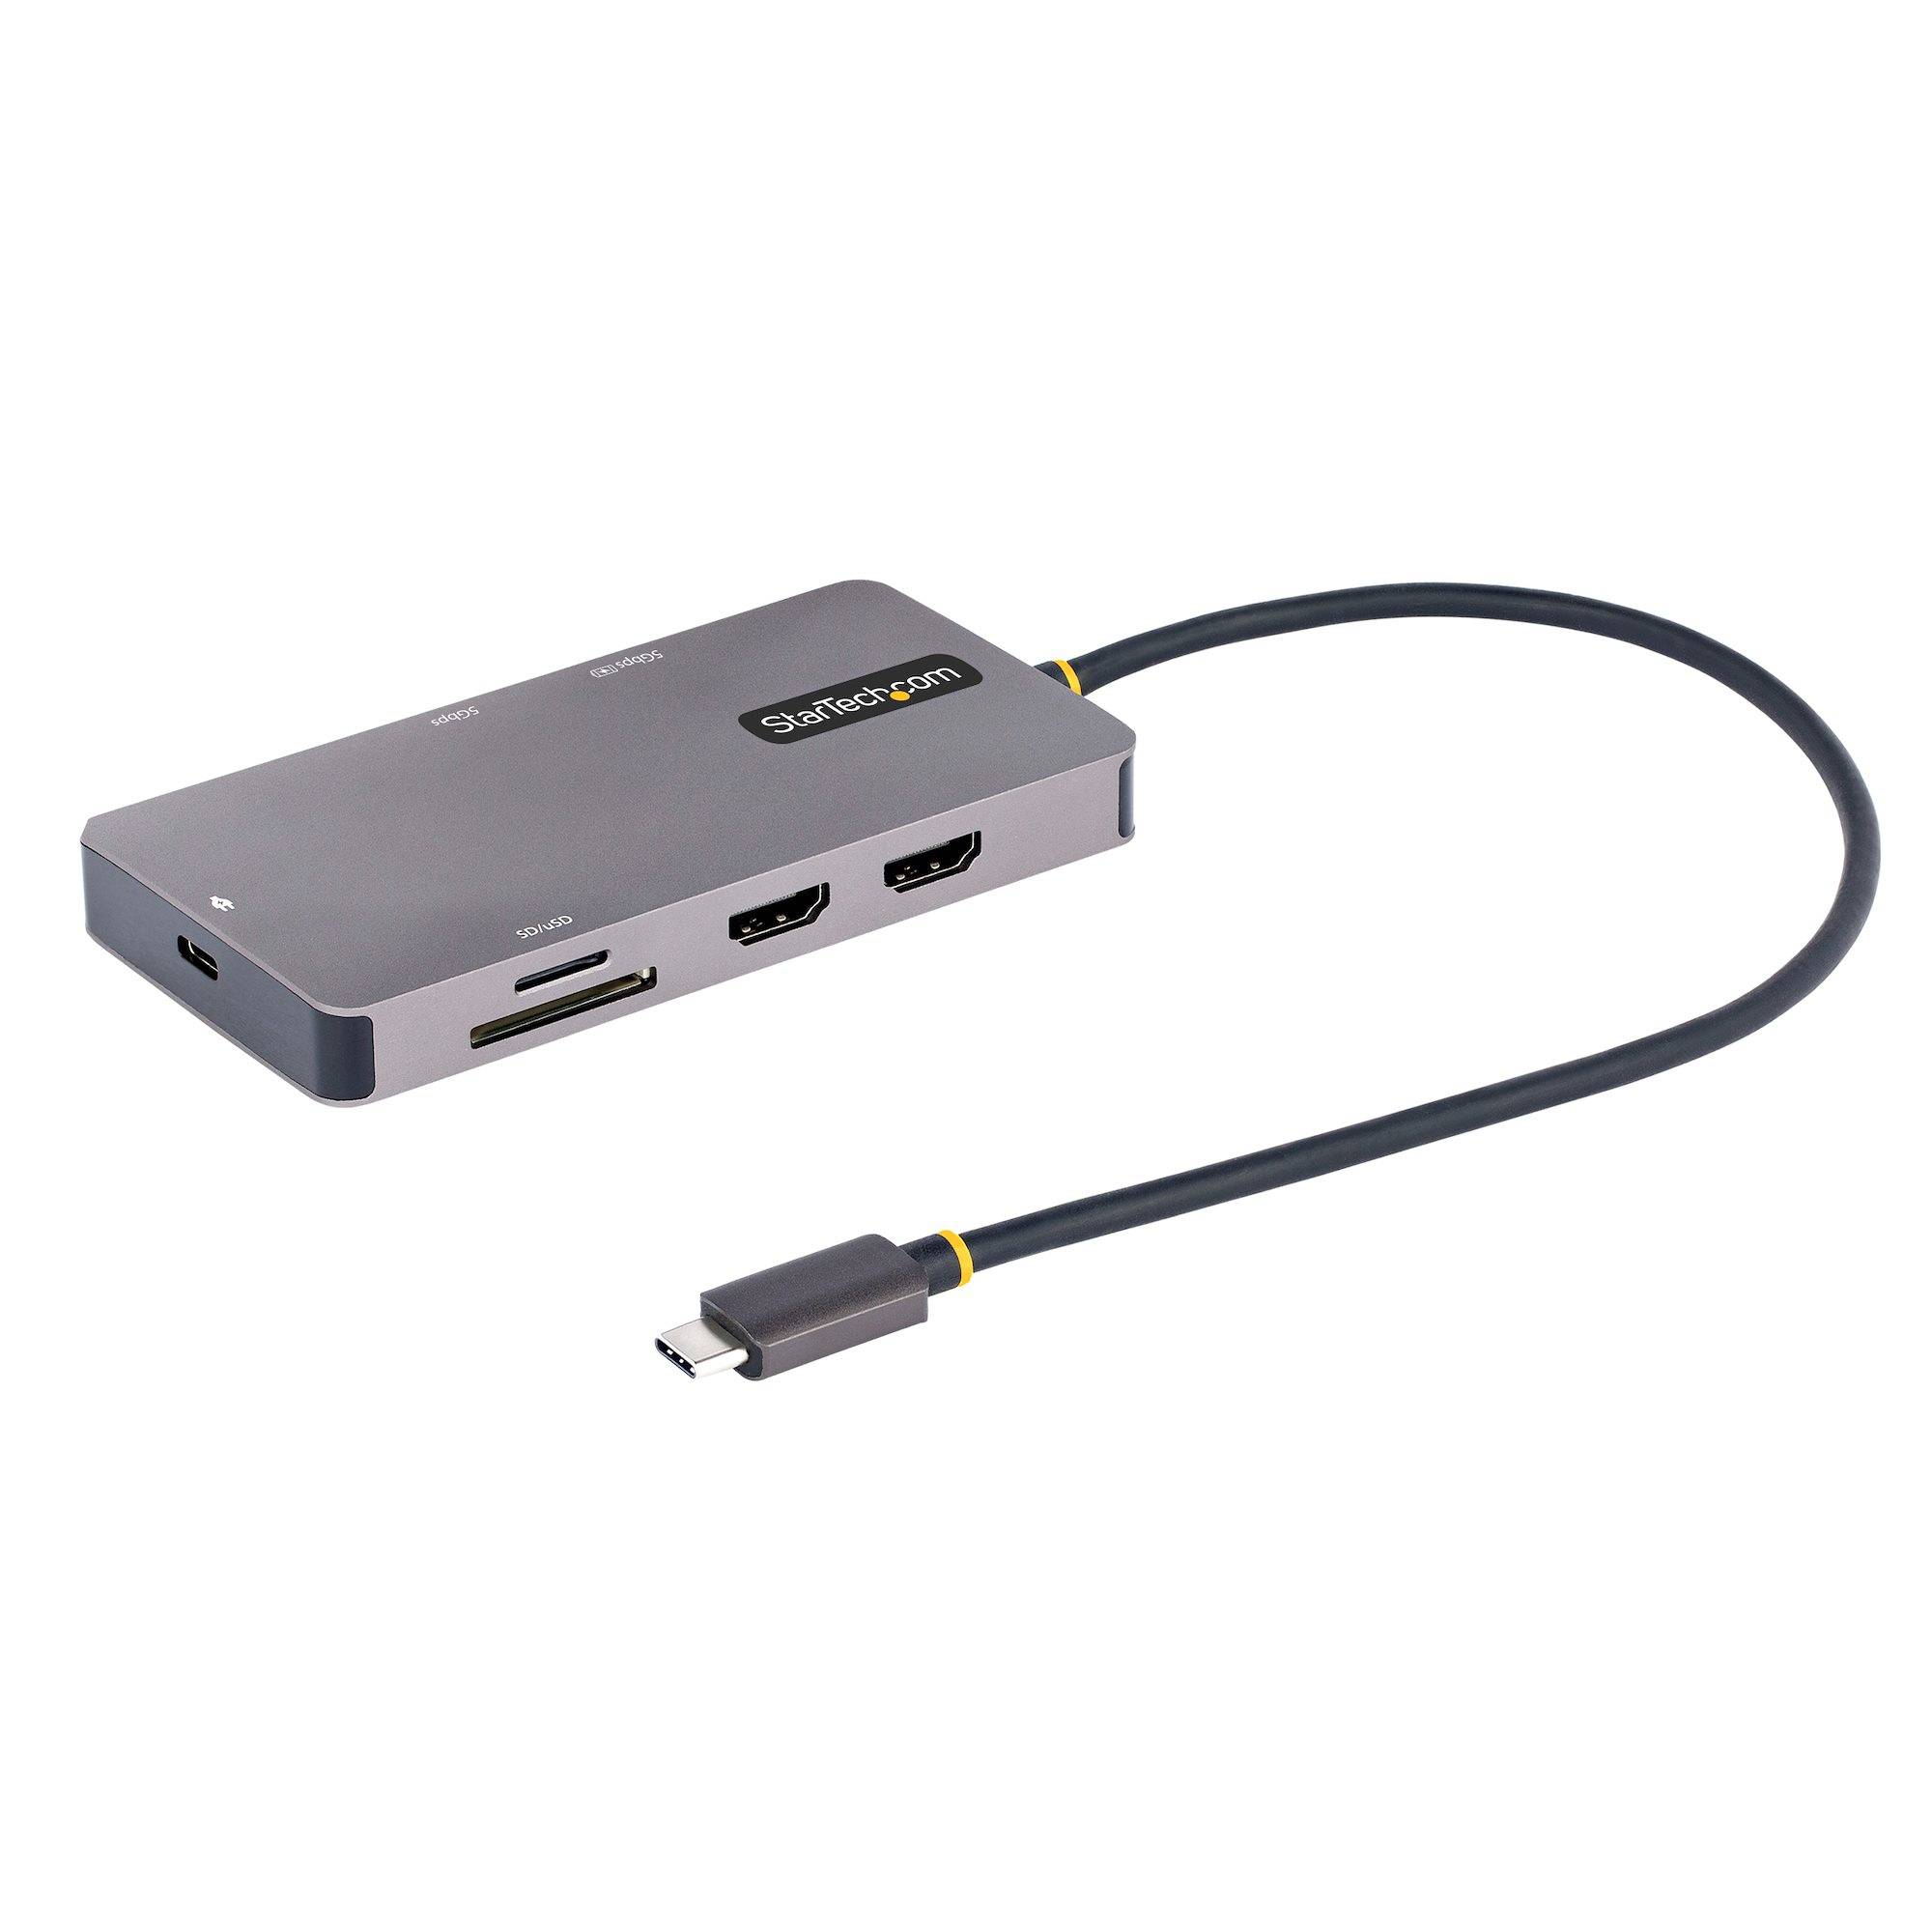 Rca Informatique - Image du produit : USB C MULTIPORT ADAPTER DUAL HDMI 4K 60HZ 2PT 5GBPS USB-A